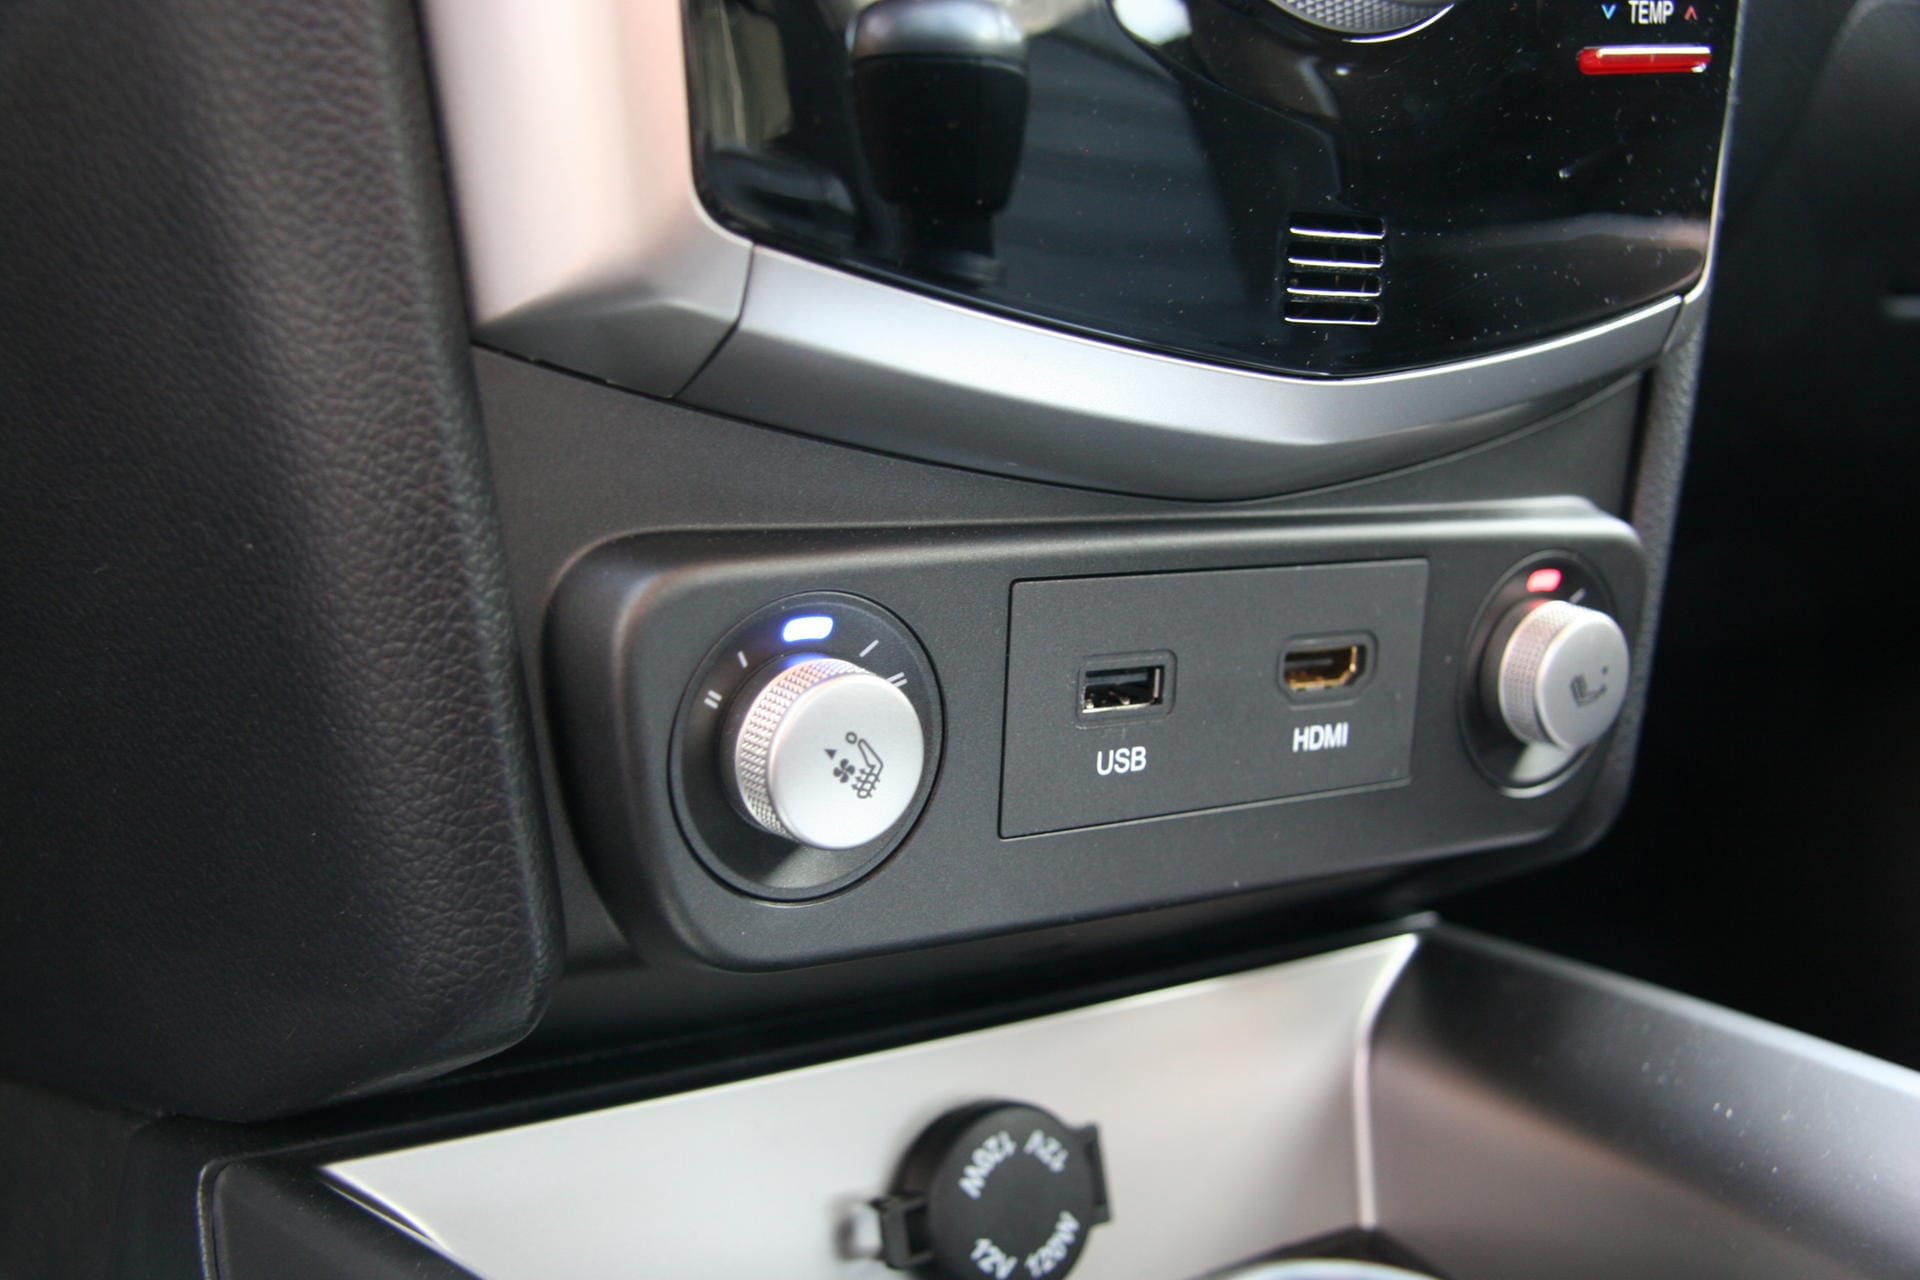 Der Fahrersitz ist beheiz- und belüftbar. Darunter die Anschlussmöglichkeiten für USB, HDMI und 12-Volt.